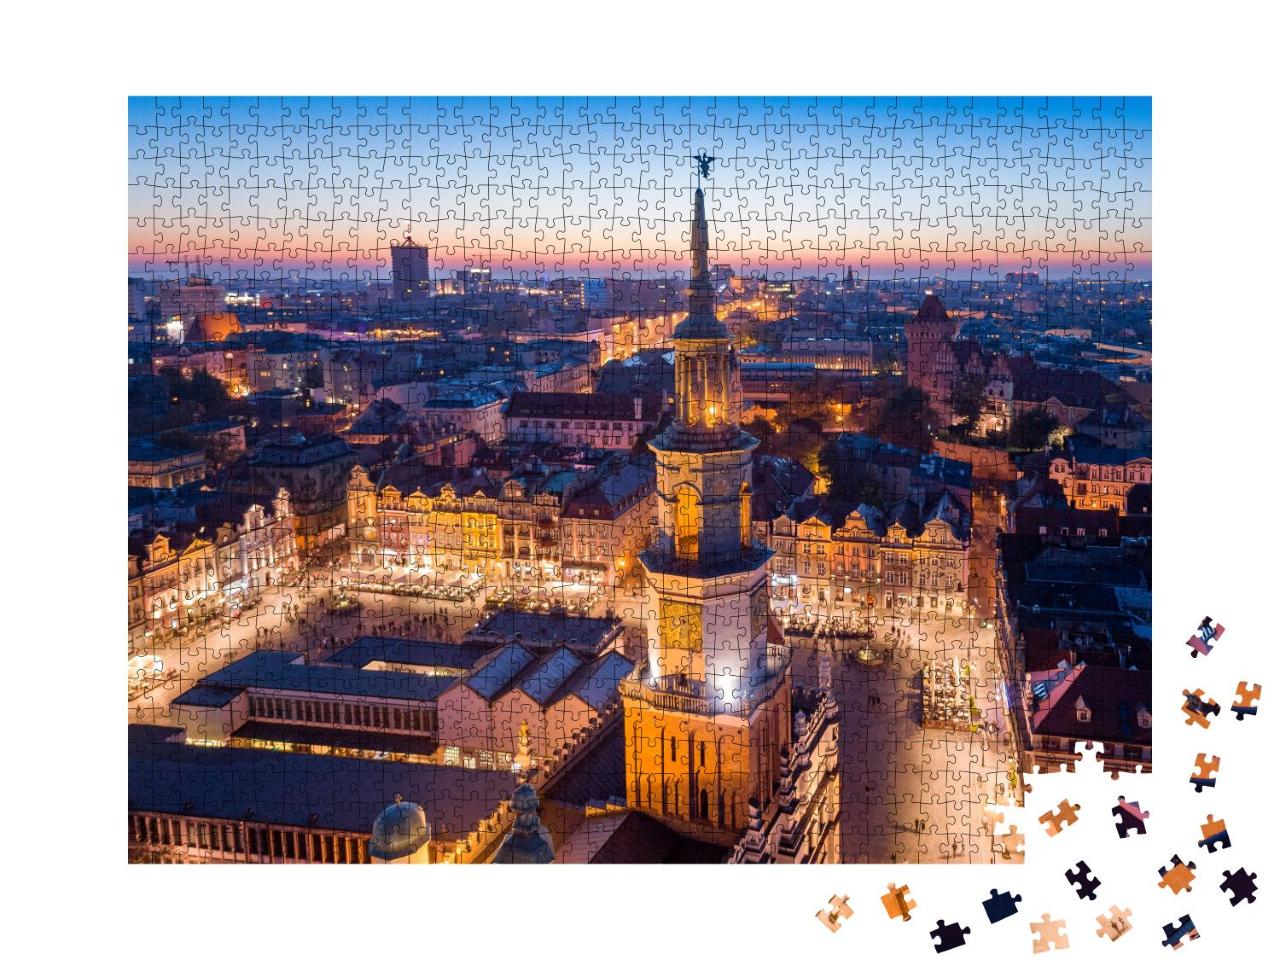 Puzzle 1000 Teile „Hauptplatz von Posen: Altstadt am Abend, Polen“